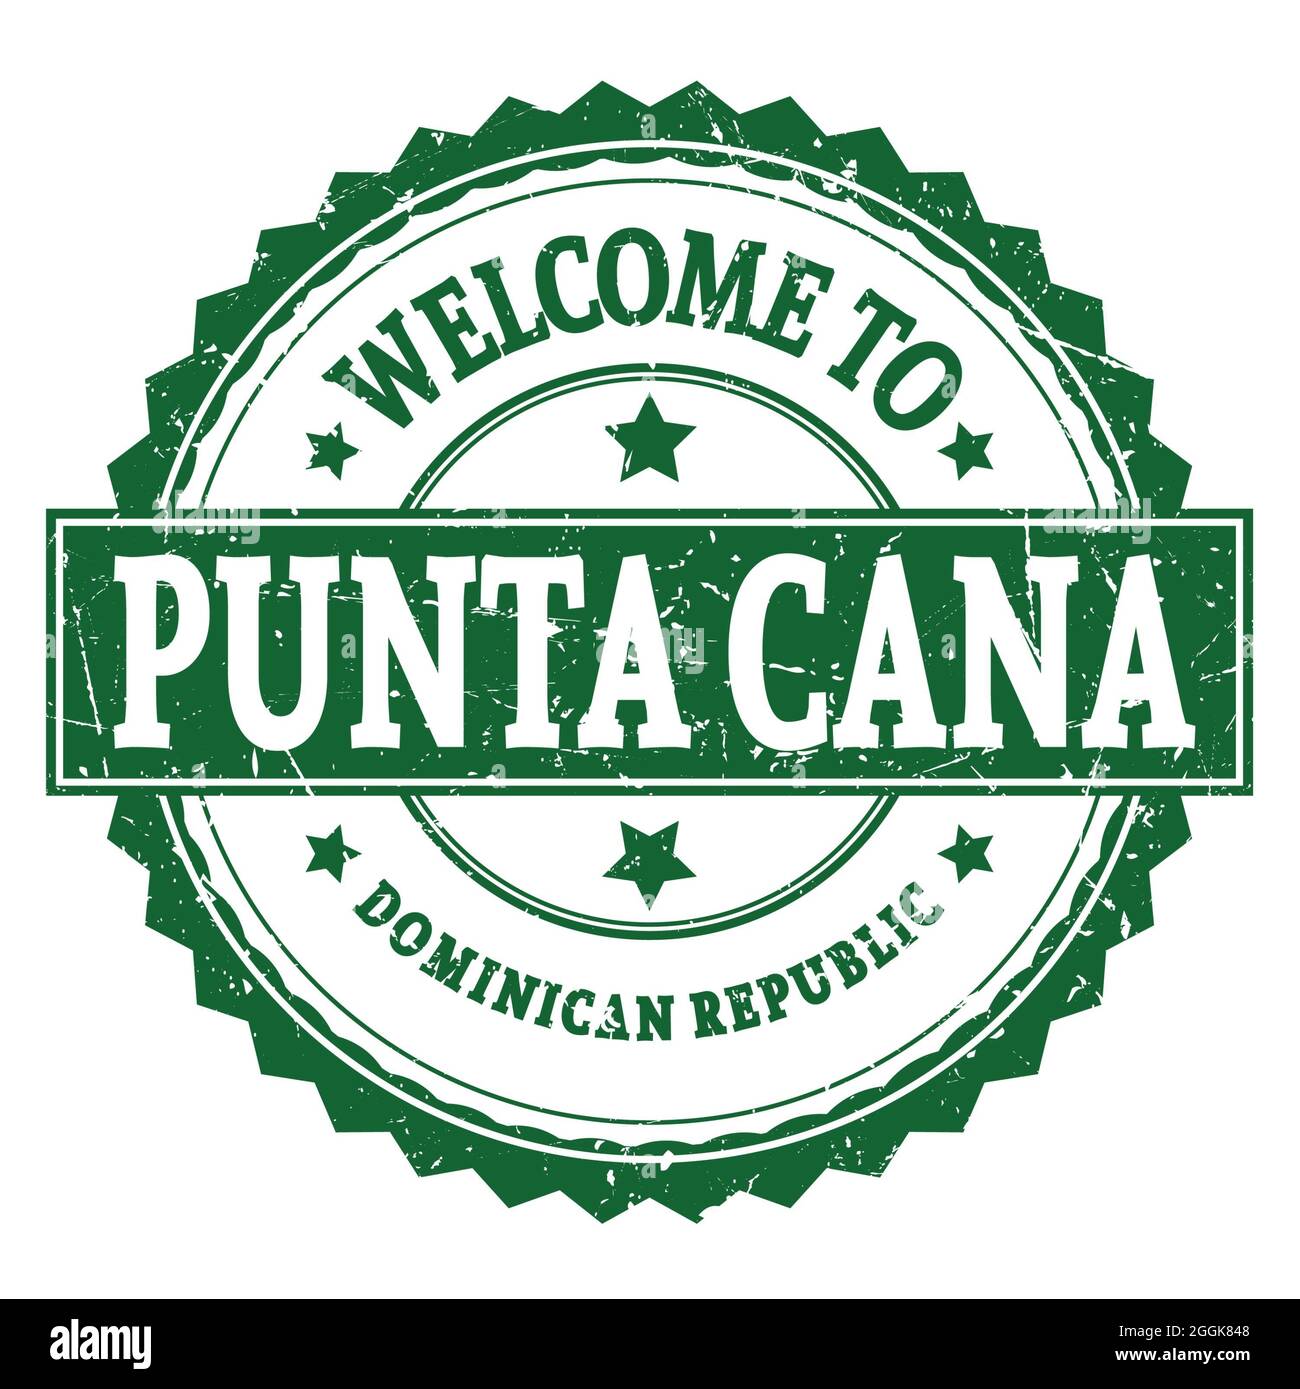 BIENVENUE À PUNTA CANA - RÉPUBLIQUE DOMINICAINE, mots écrits sur le timbre rond vert en zigzag Banque D'Images